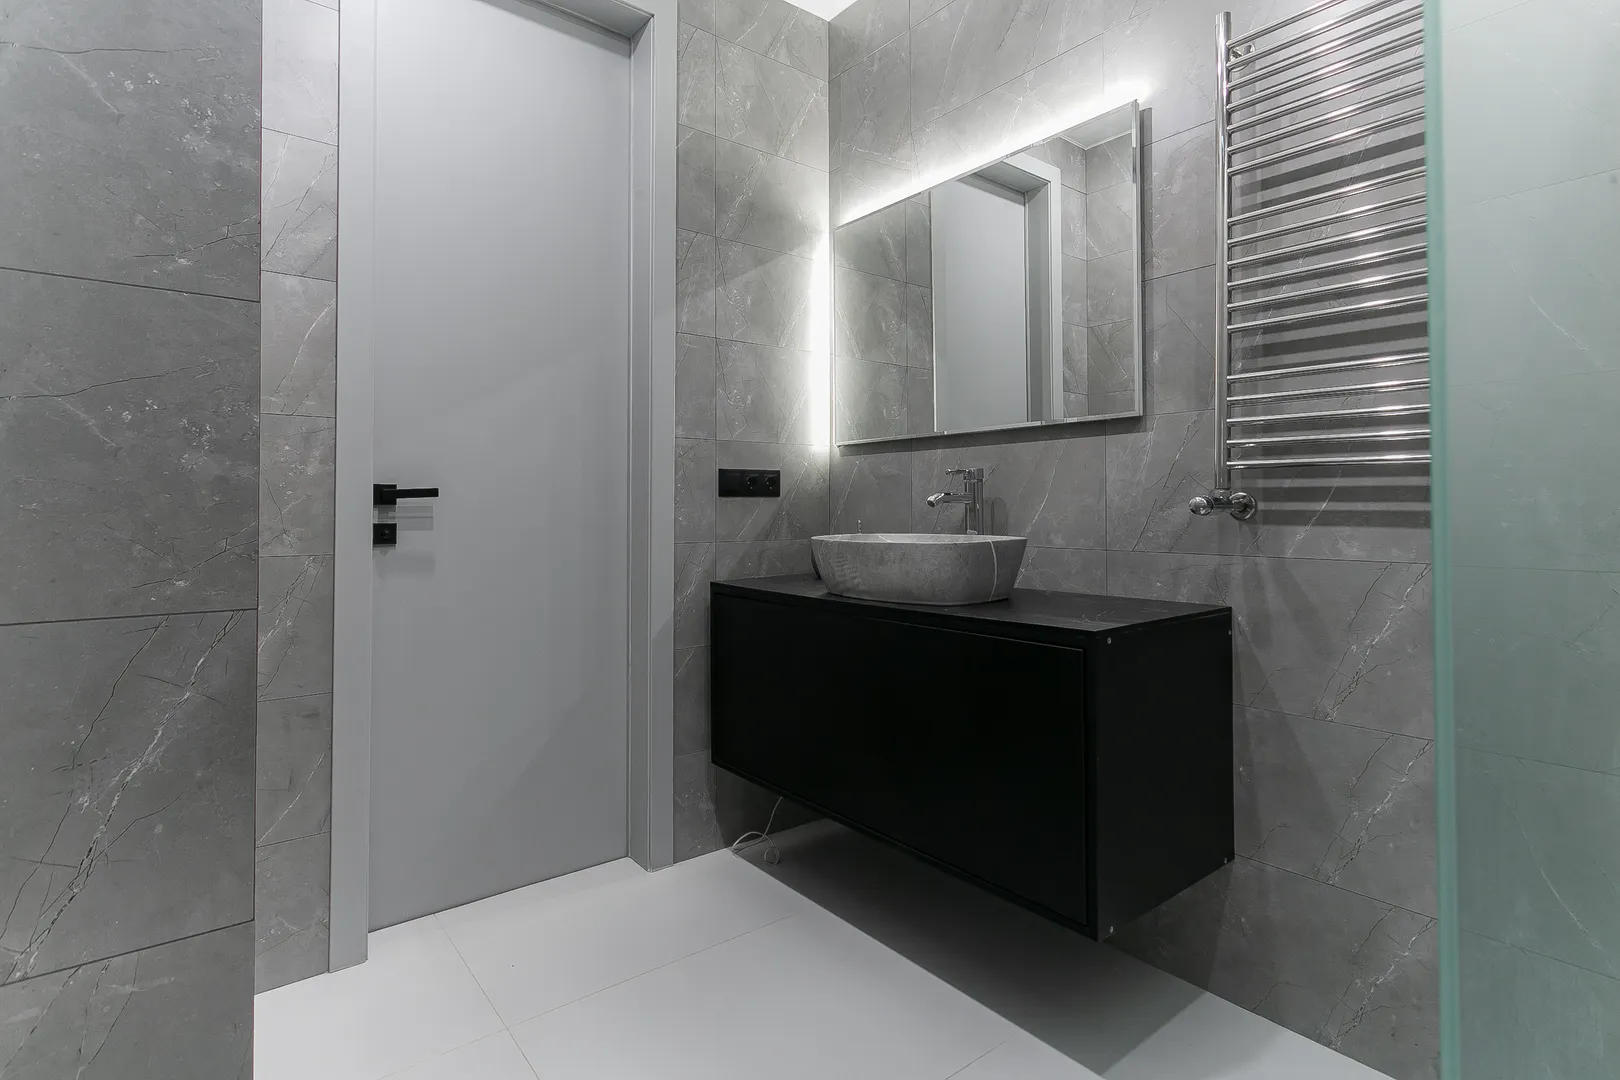 Ванная комната оборудована встроенным унитазом, гигиеническим душем, раковиной, тумбой с выдвижными ящиками, просторным душем, полотенцесушителем, зеркалом с подсветкой